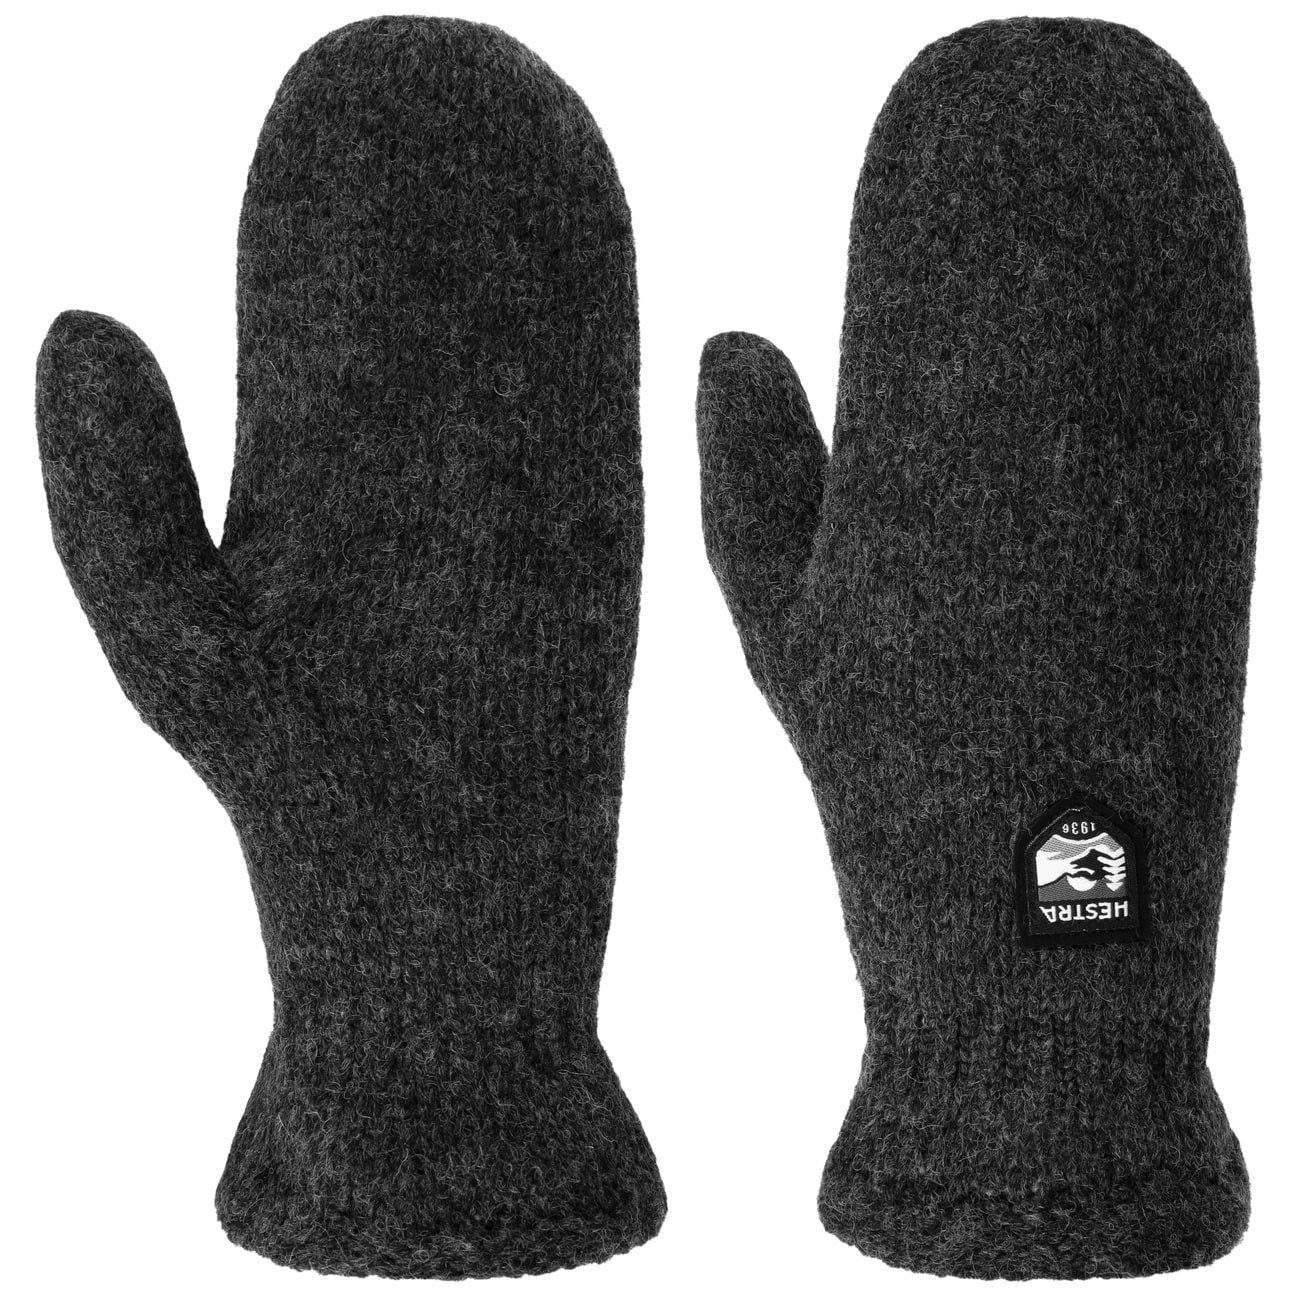 Handschuhe mit Hestra Strickhandschuhe Futter anthrazit